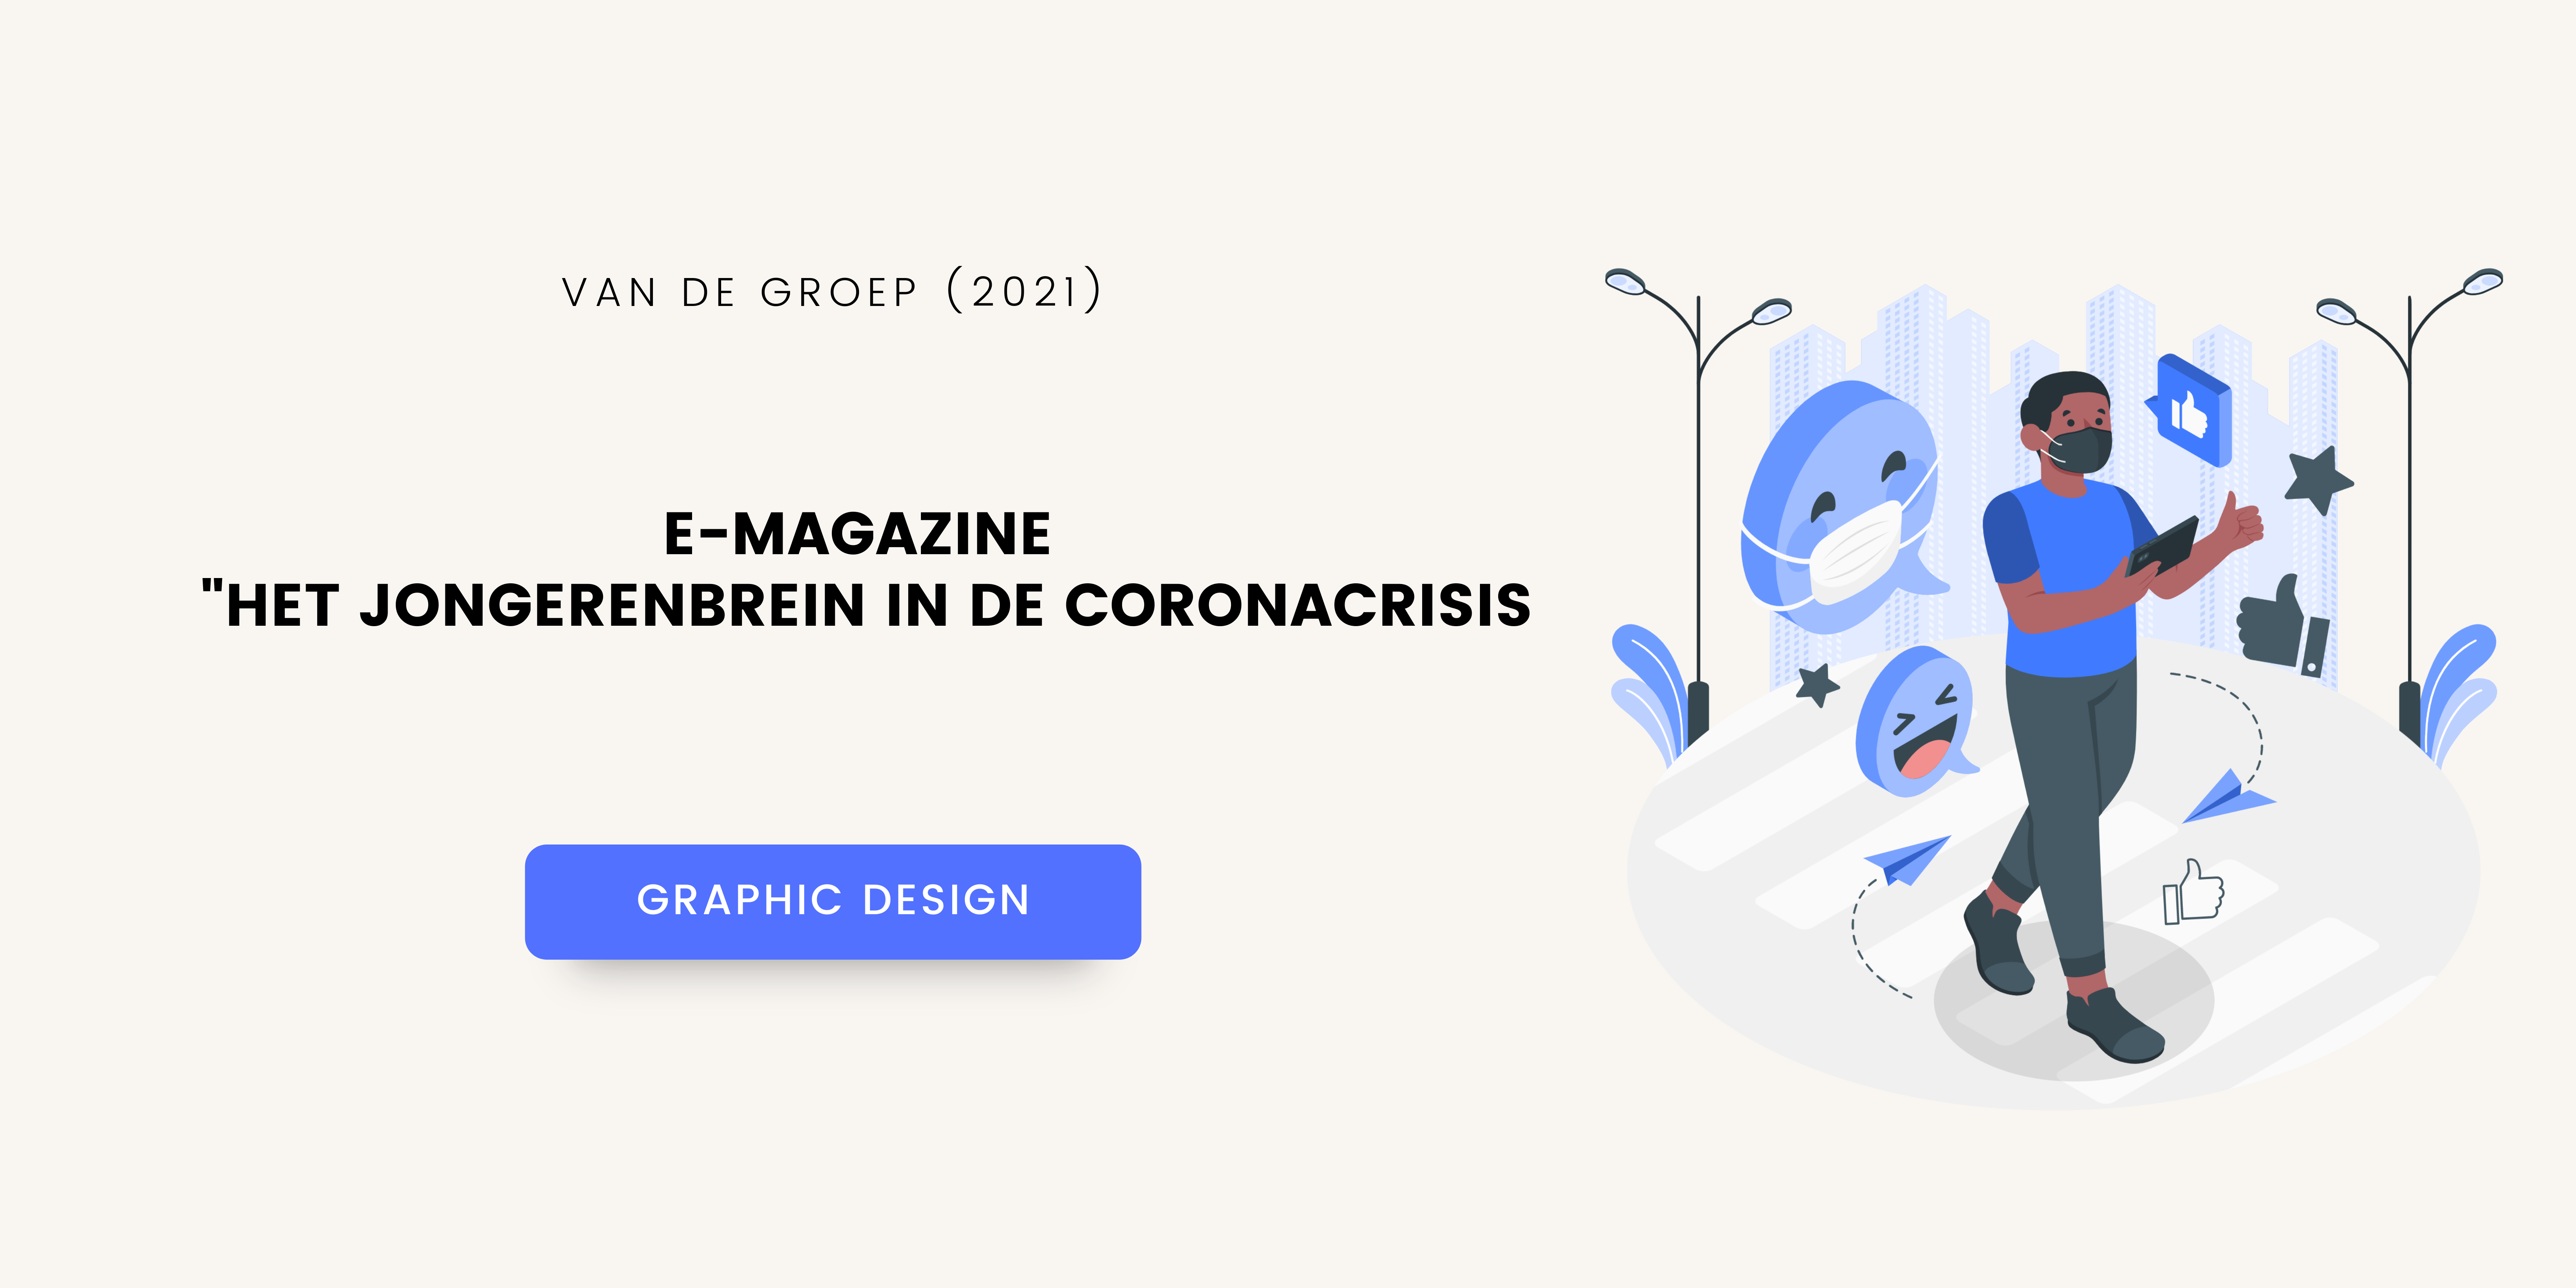 E-Magazine “Het Jongerenbrein in de Coronacrisis” – Graphic Design